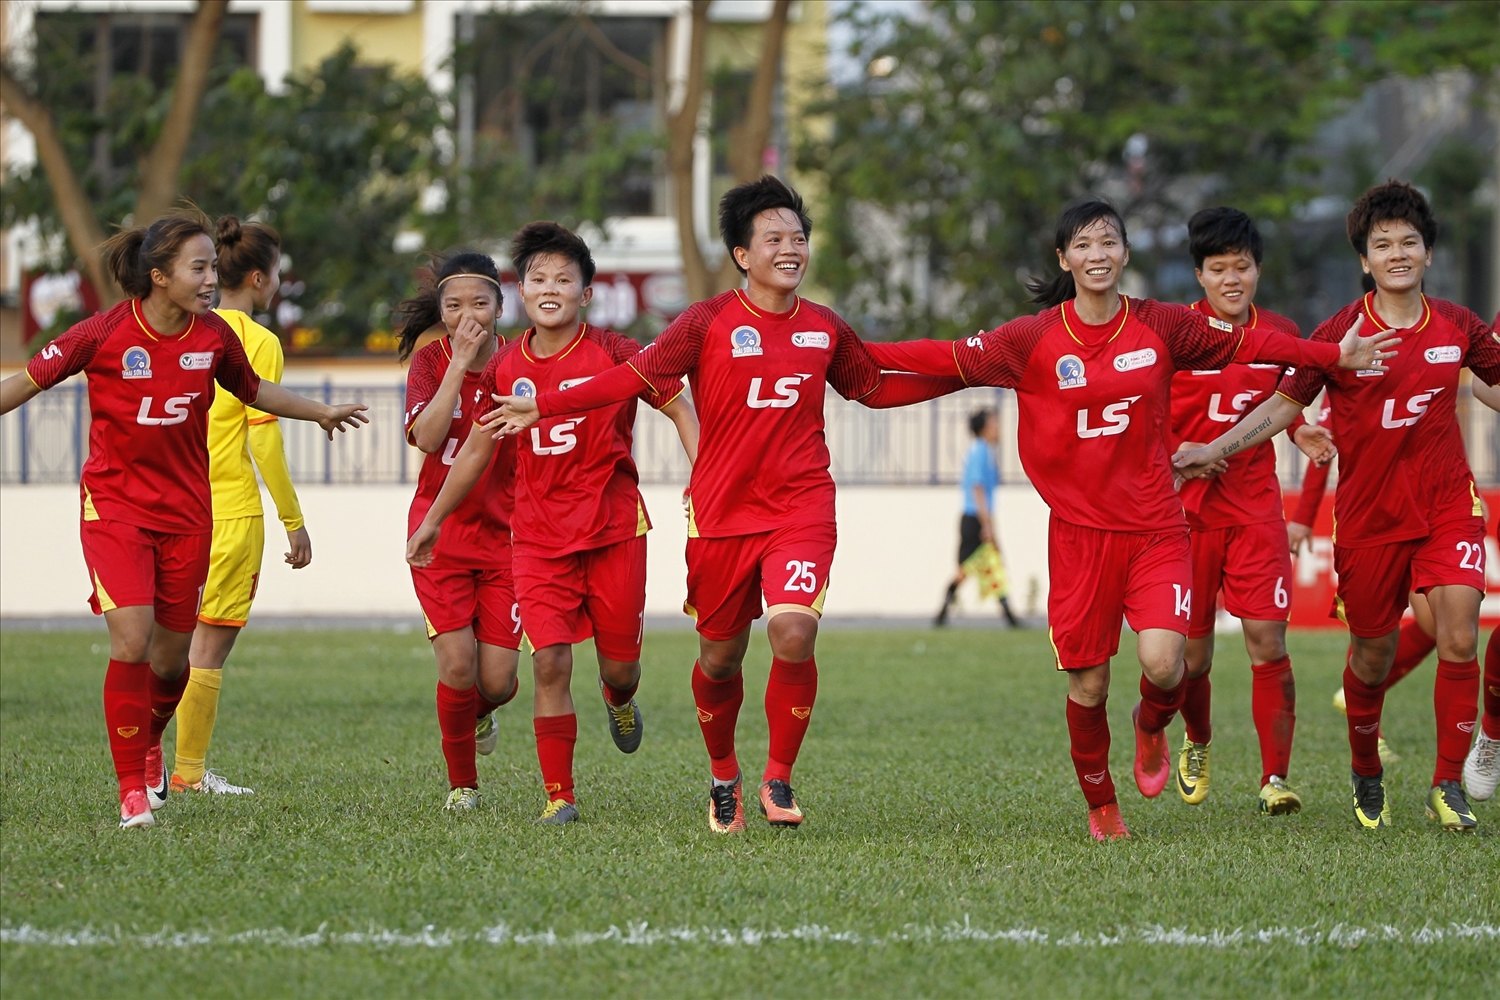 Giải bóng đá nữ vô địch quốc gia - Cúp Thái Sơn Bắc 2022 mở màn ngày 30/8 